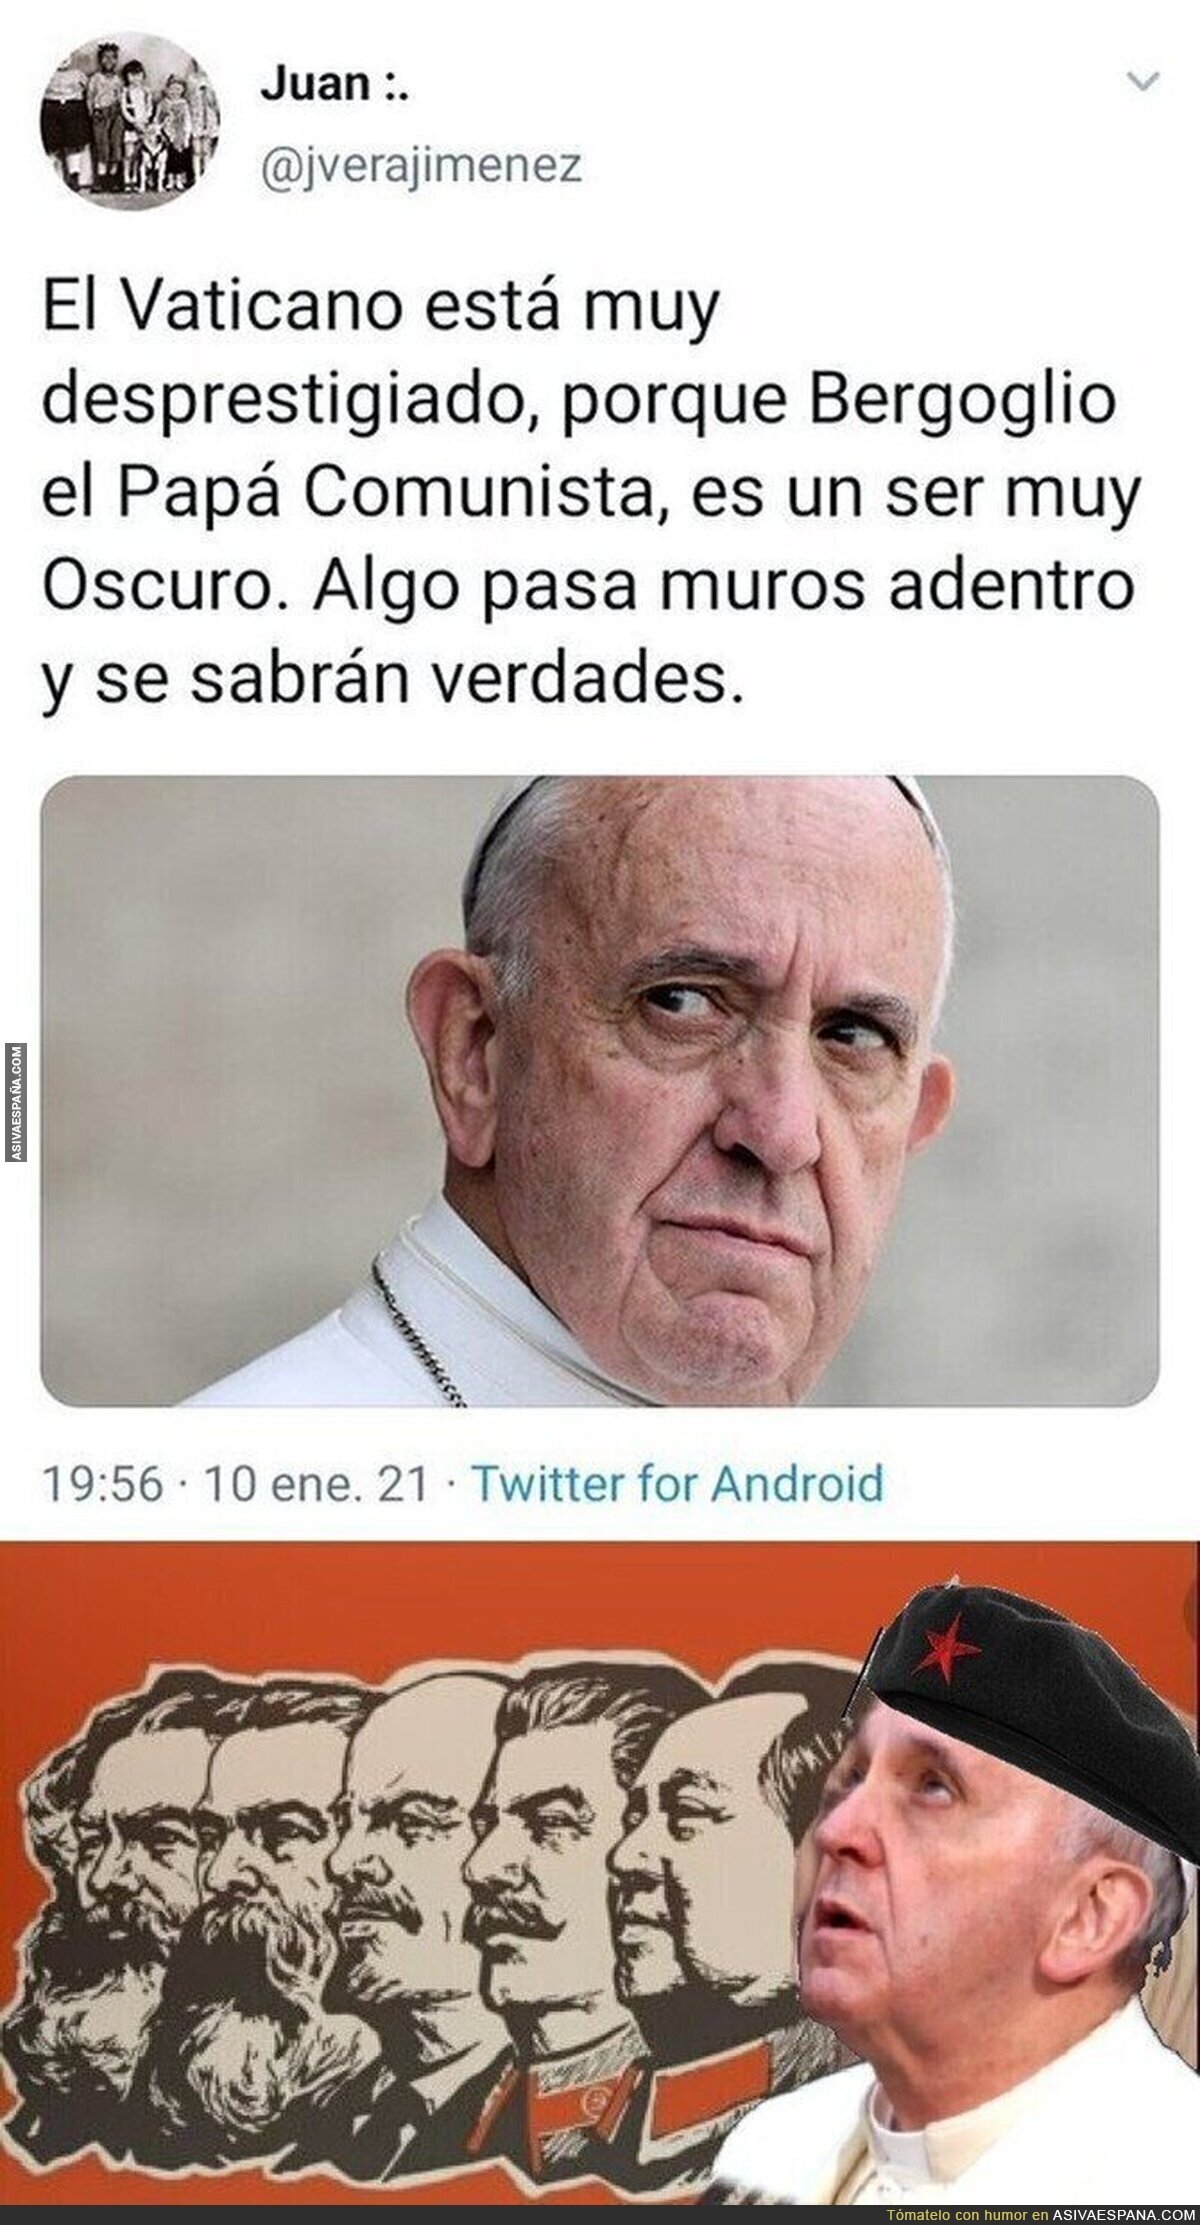 La conspiración del Papa Comunista